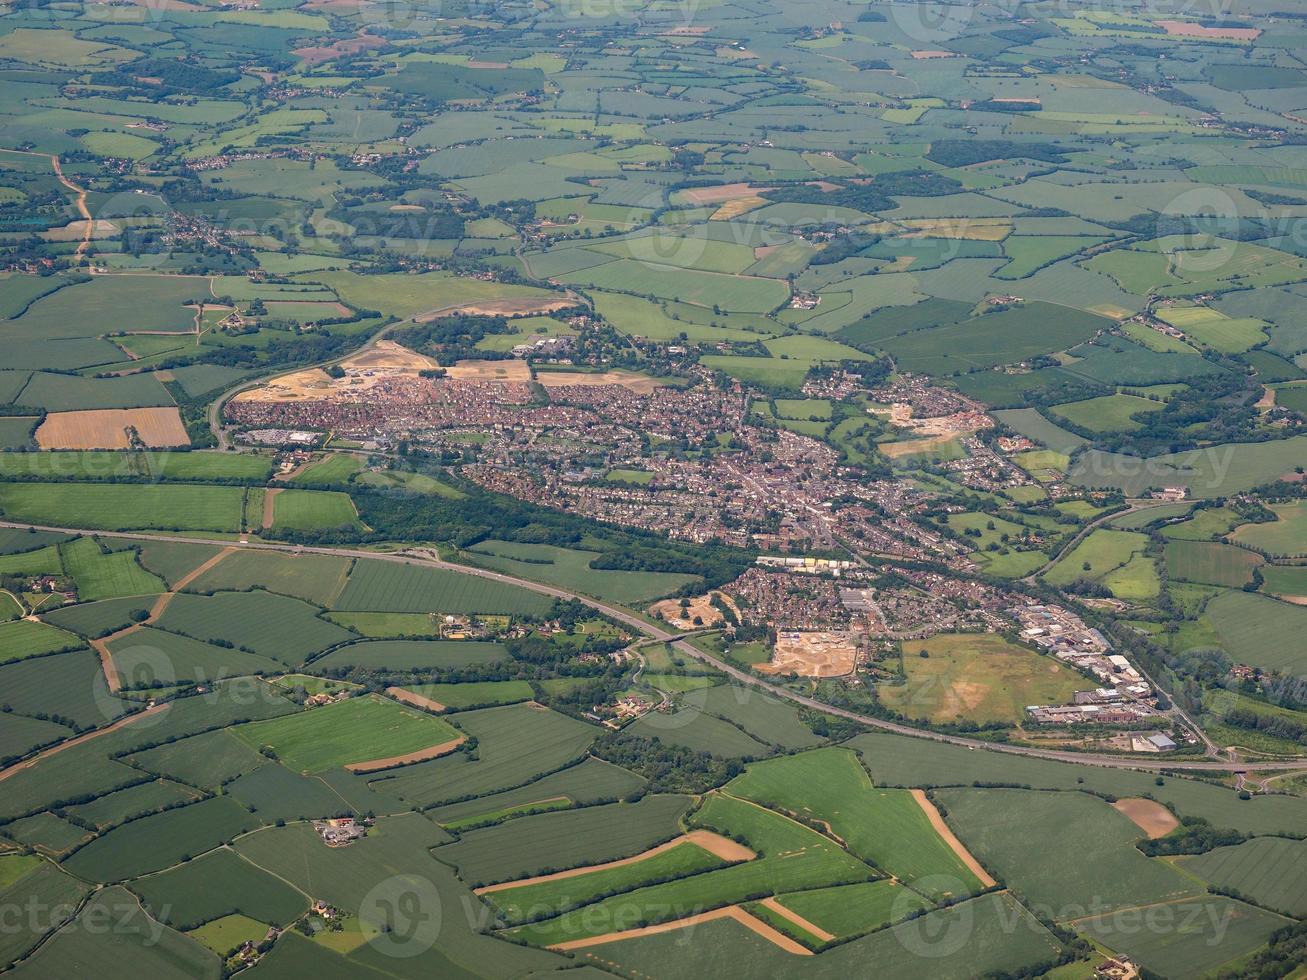 Vue aérienne de Dunmow, Royaume-Uni photo